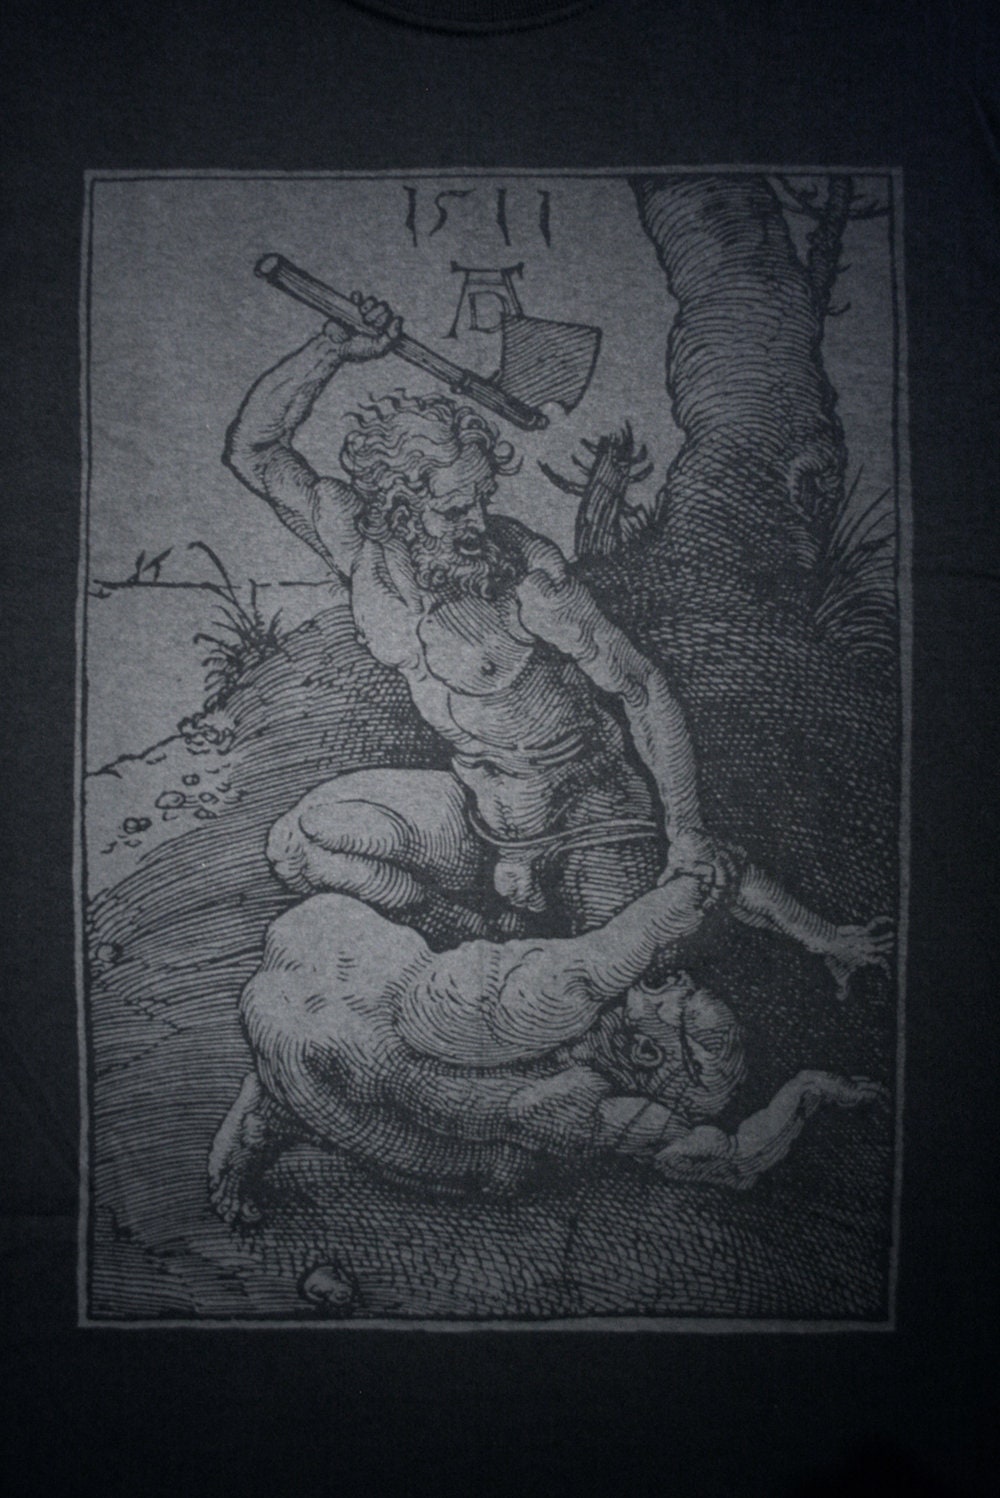 Cain and Abel, woodcut illustration by Albrecht Dürer - T-shirt